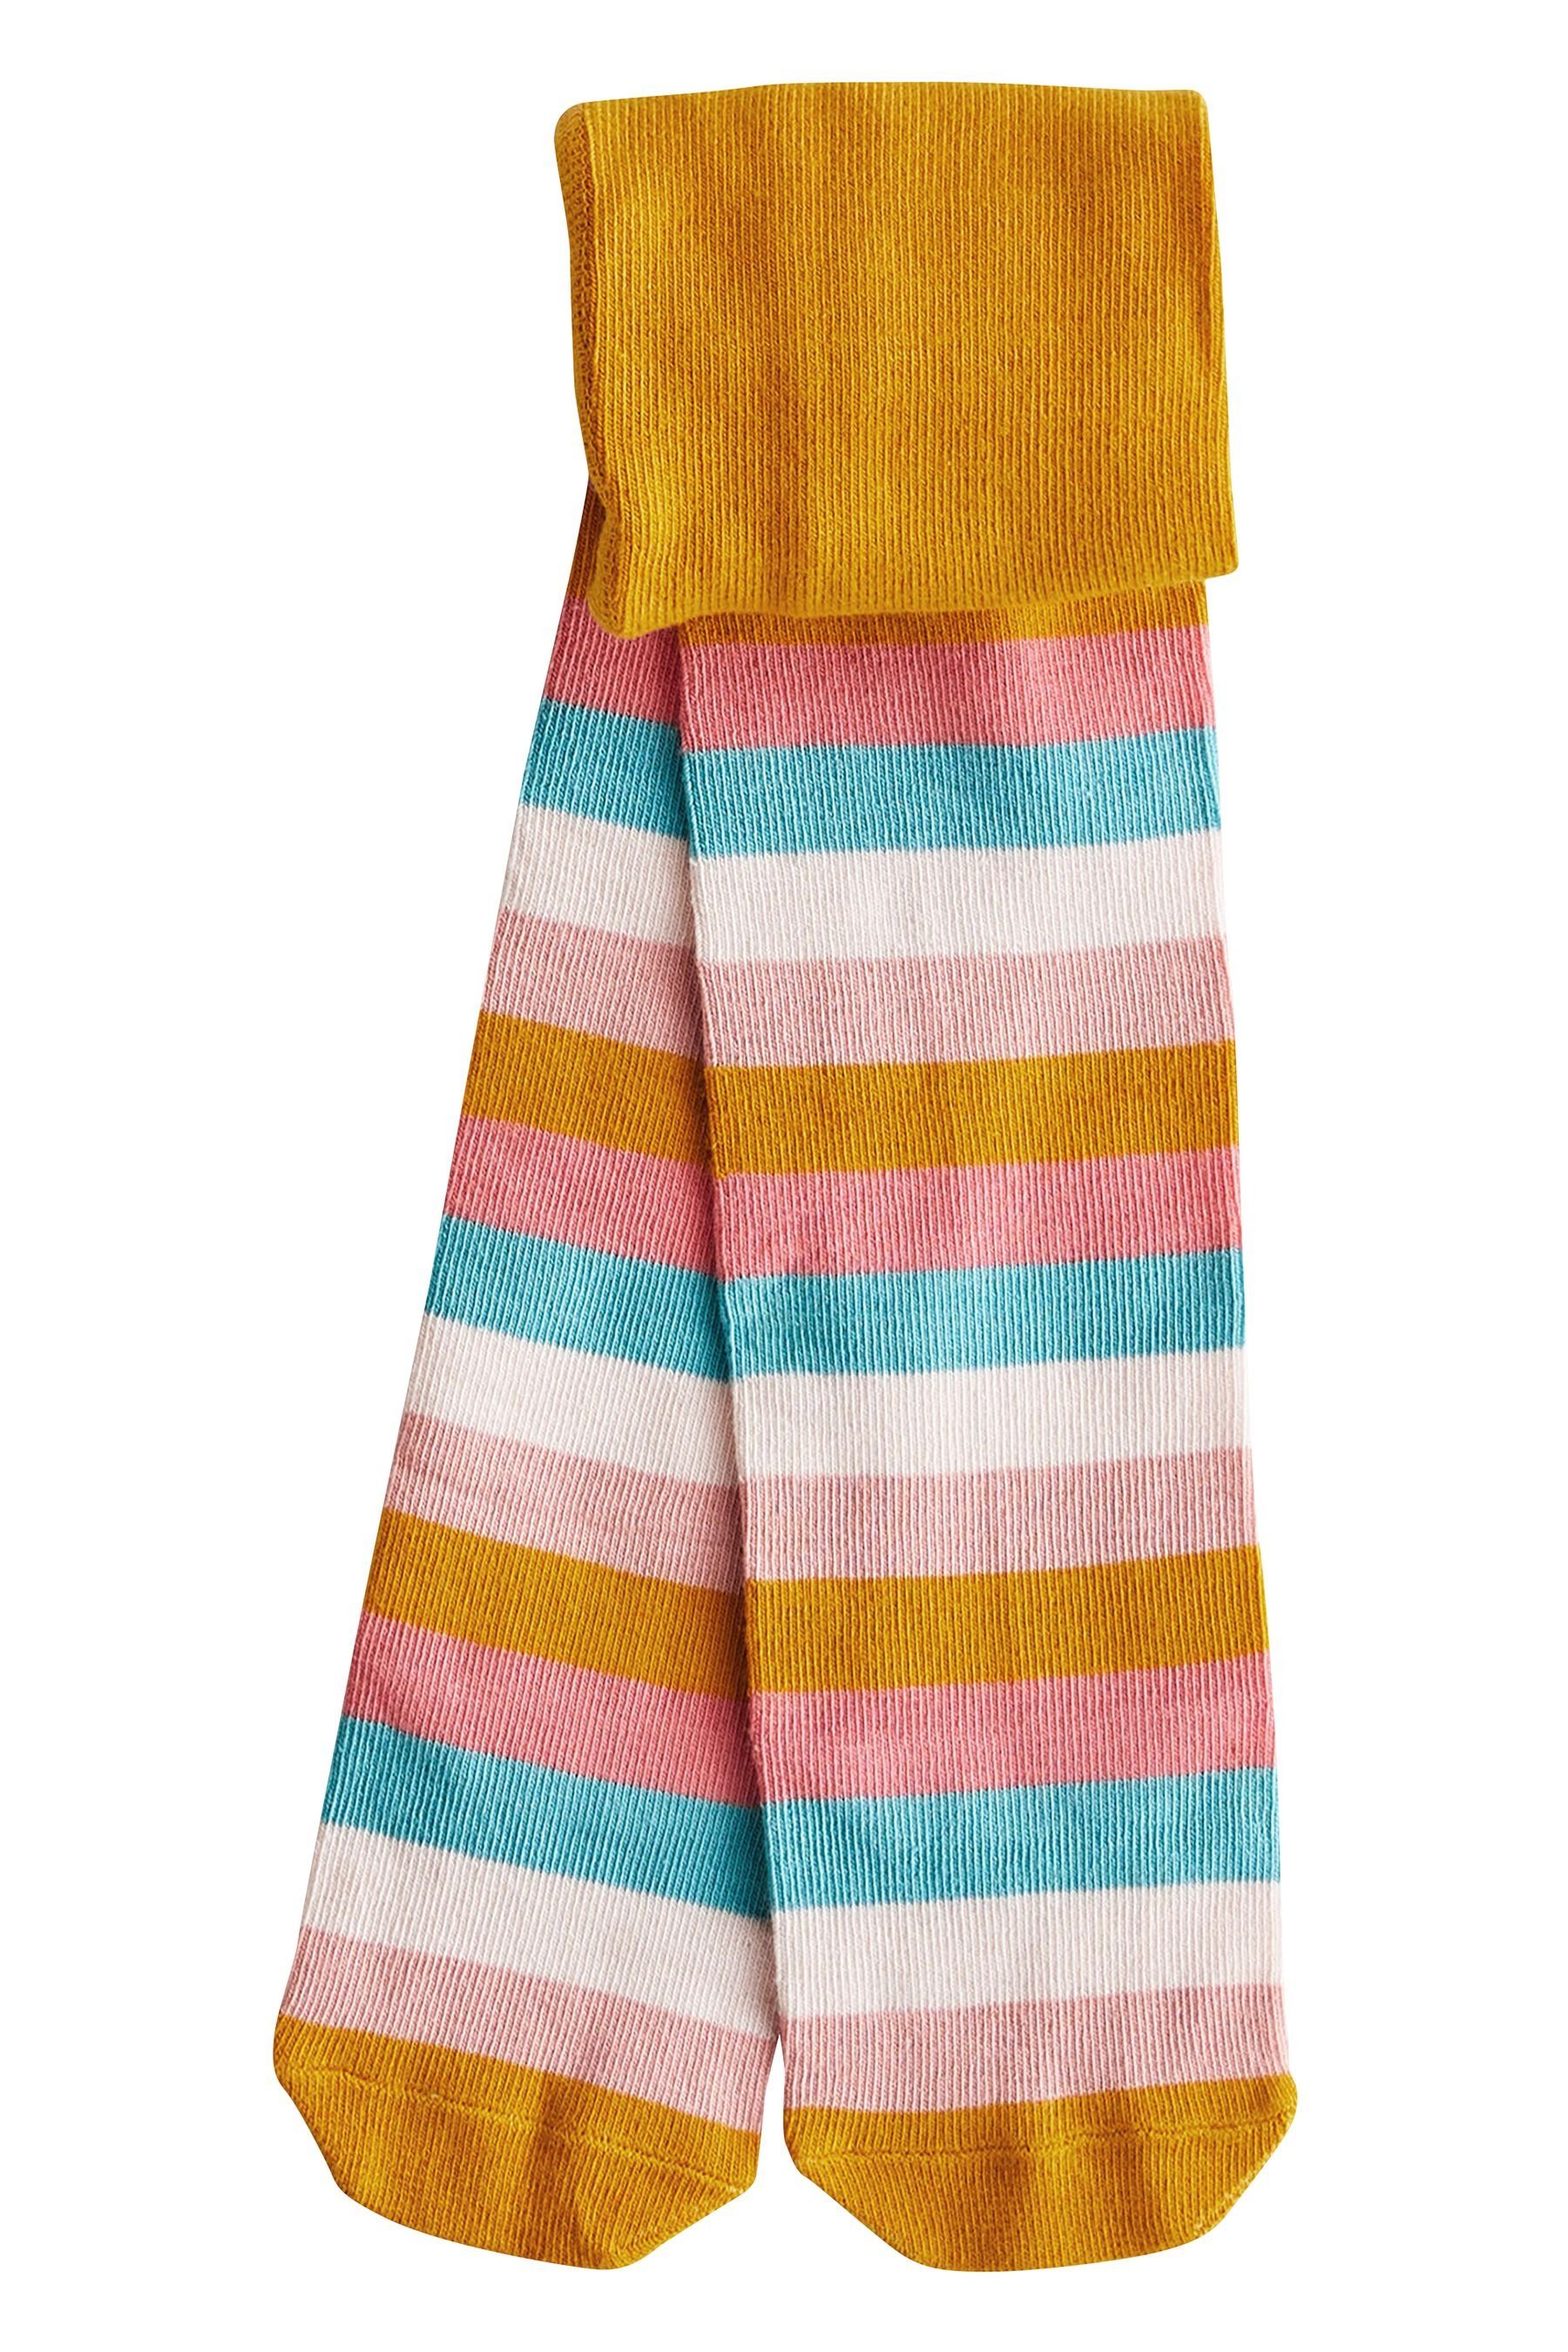 Next Strickkleid Regenbogen im und Set (2-tlg) Strumpfhose Pulloverkleid